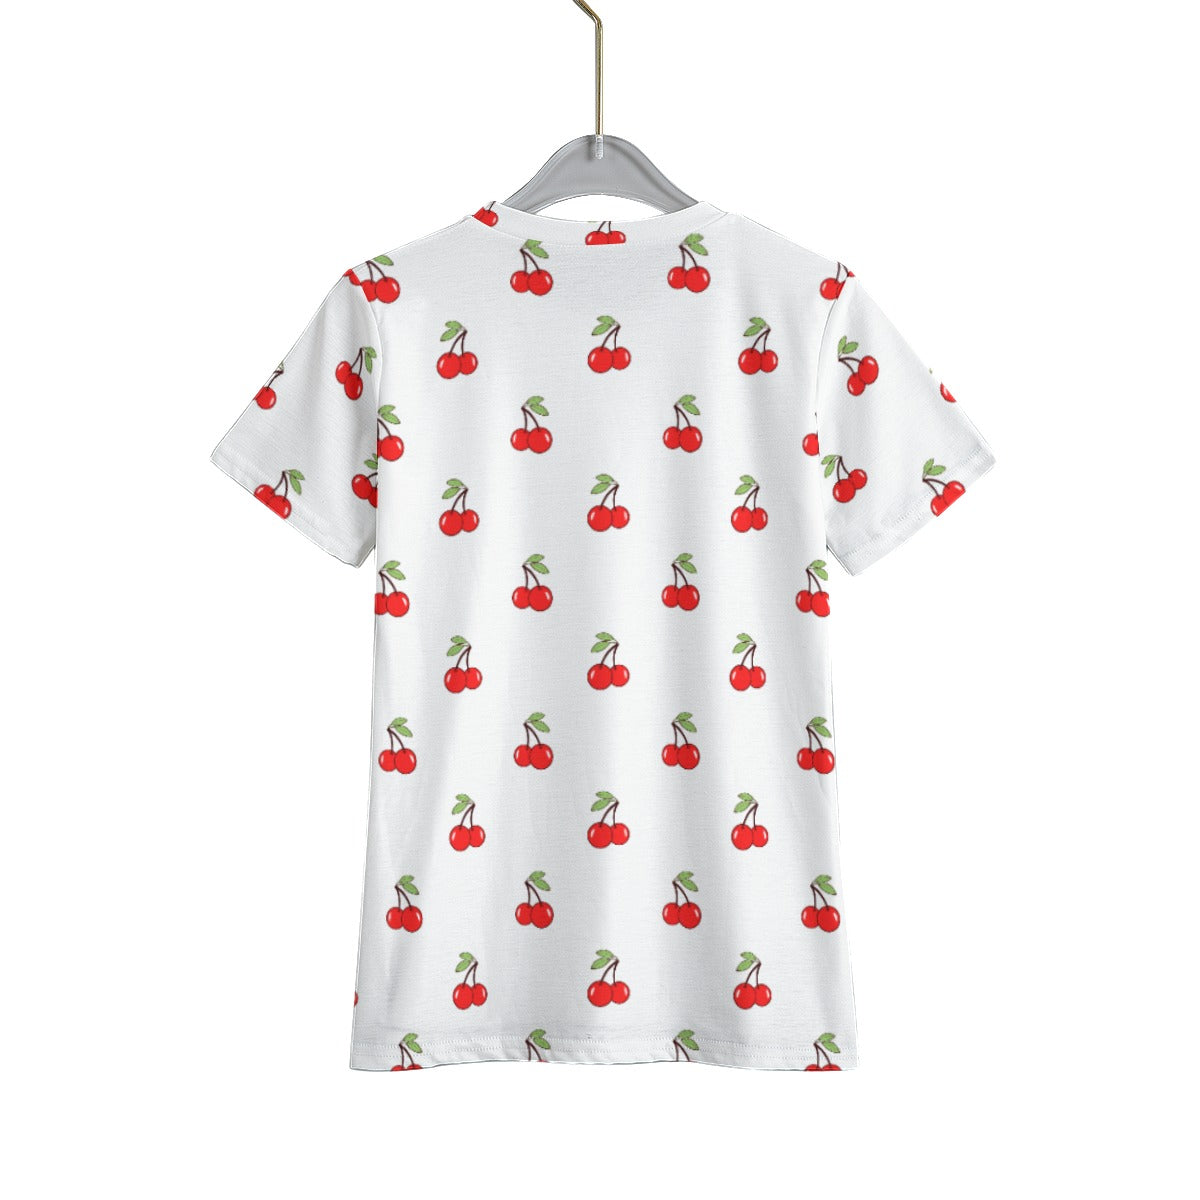 Cheery Cherry Kid's T-Shirt